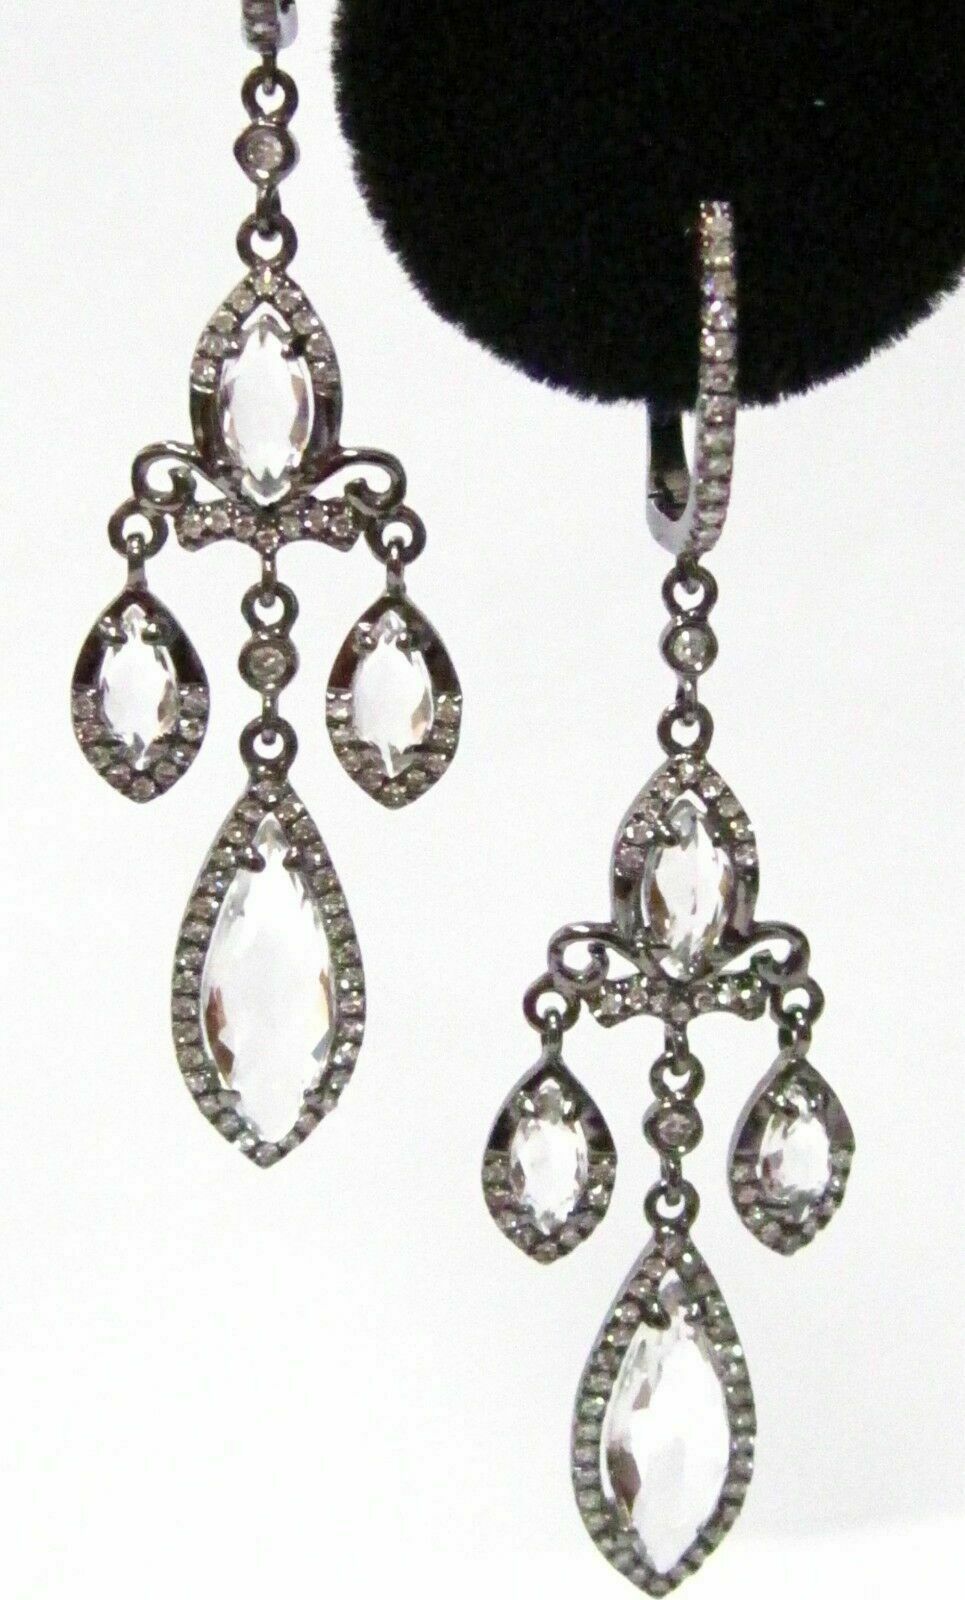 3.69 TCW Natural White Topaz & Diamonds Dangling Chandelier Earrings 14k WG